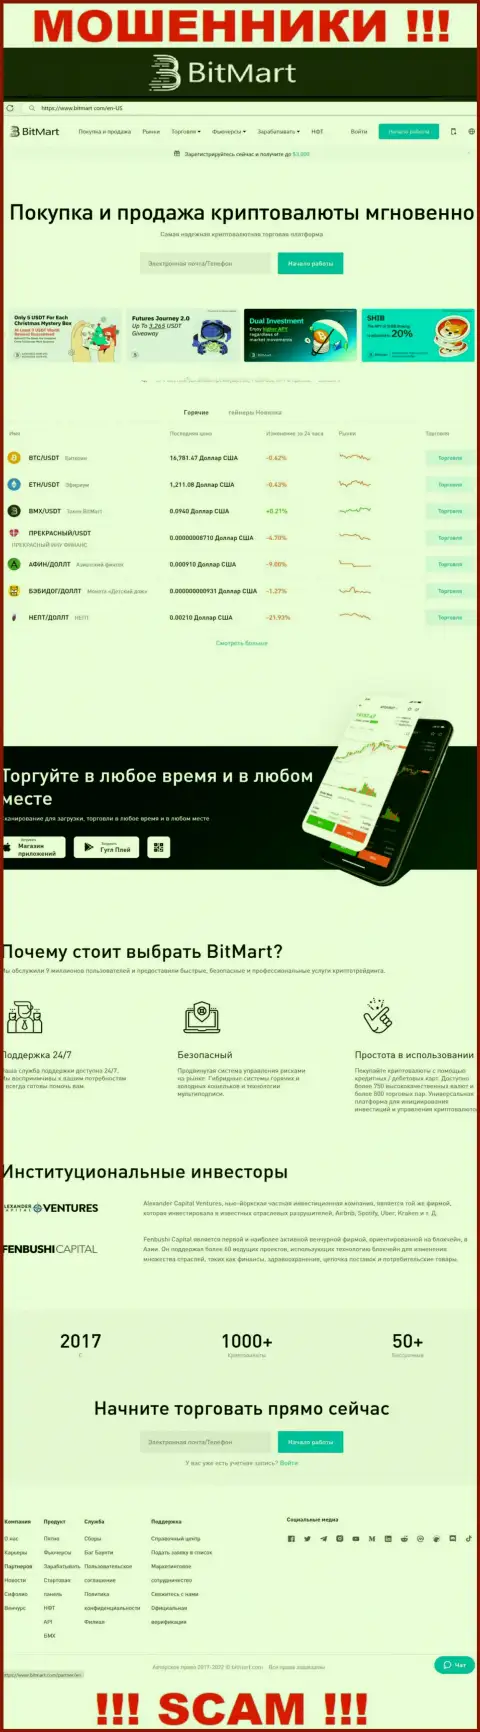 Внешний вид официального сайта противоправно действующей компании BitMart